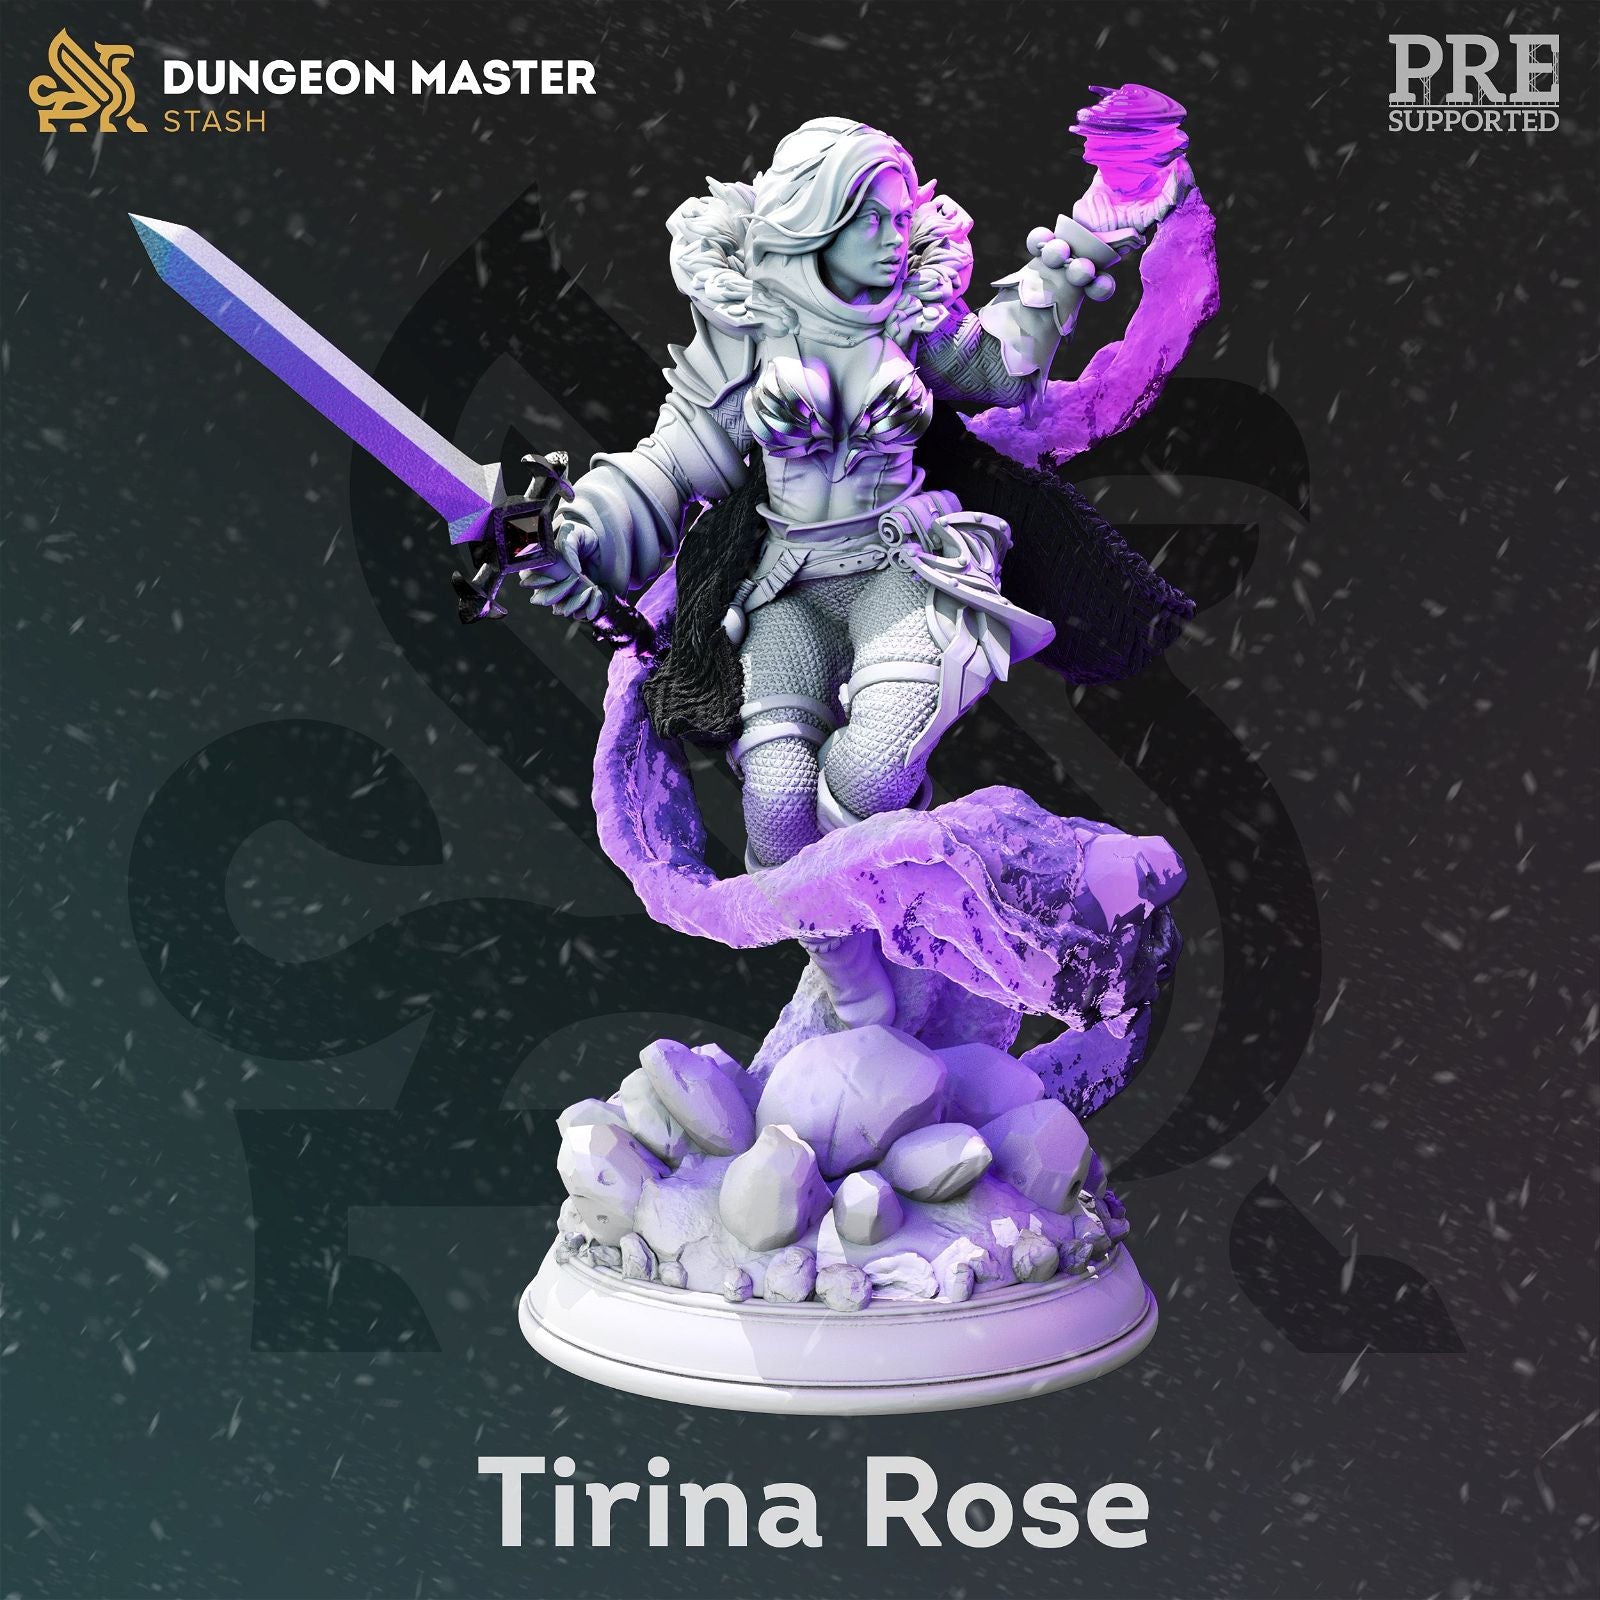 Tirina Rose - The Printable Dragon